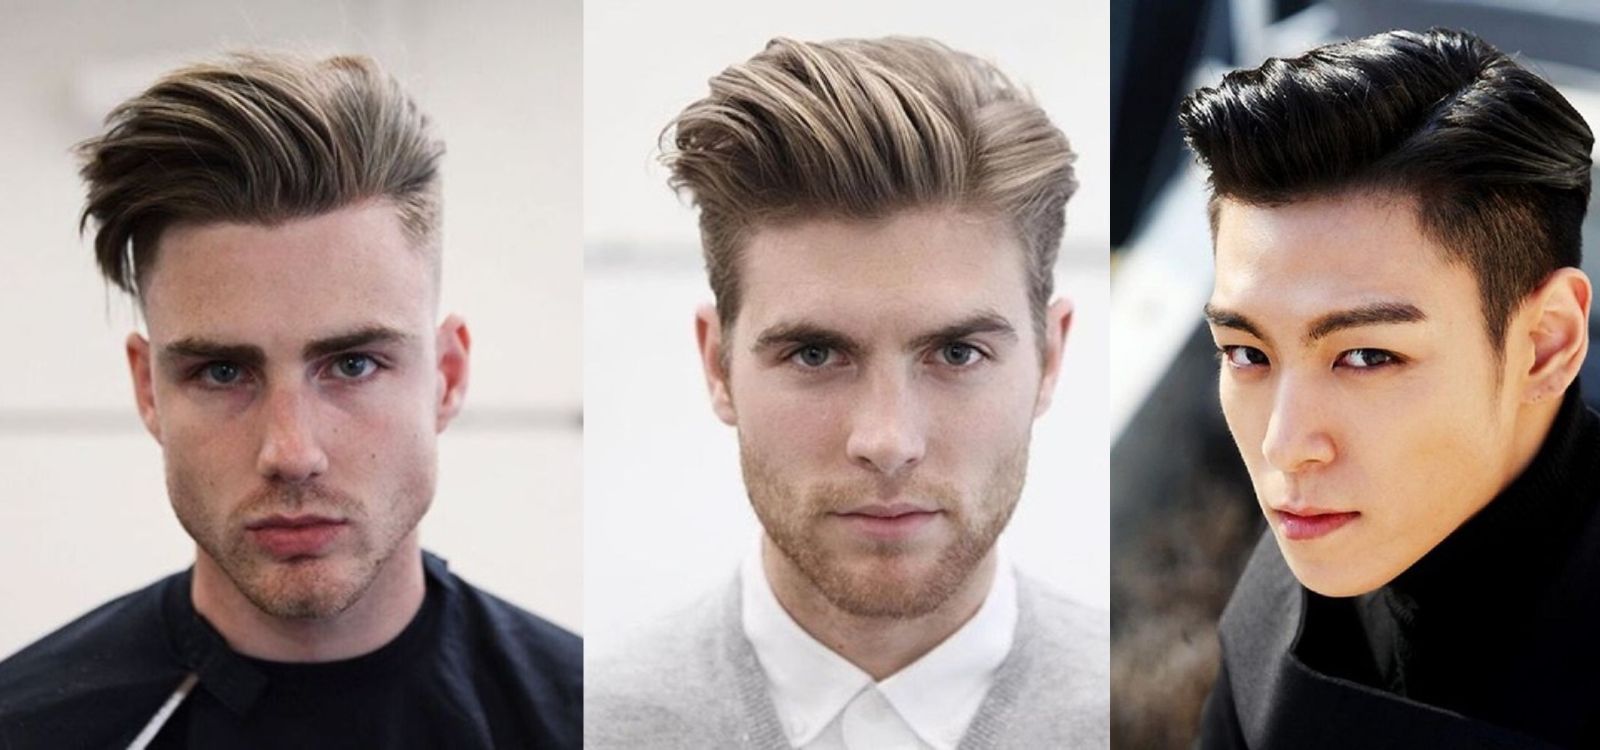 ĐỪNG CẮT KIỂU TÓC NÀY NẾU KHÔNG MUỐN LẤY VỢ SỚM - Kiểu tóc Undercut - tóc  nam đẹp 2021-Chính Barber - YouTube